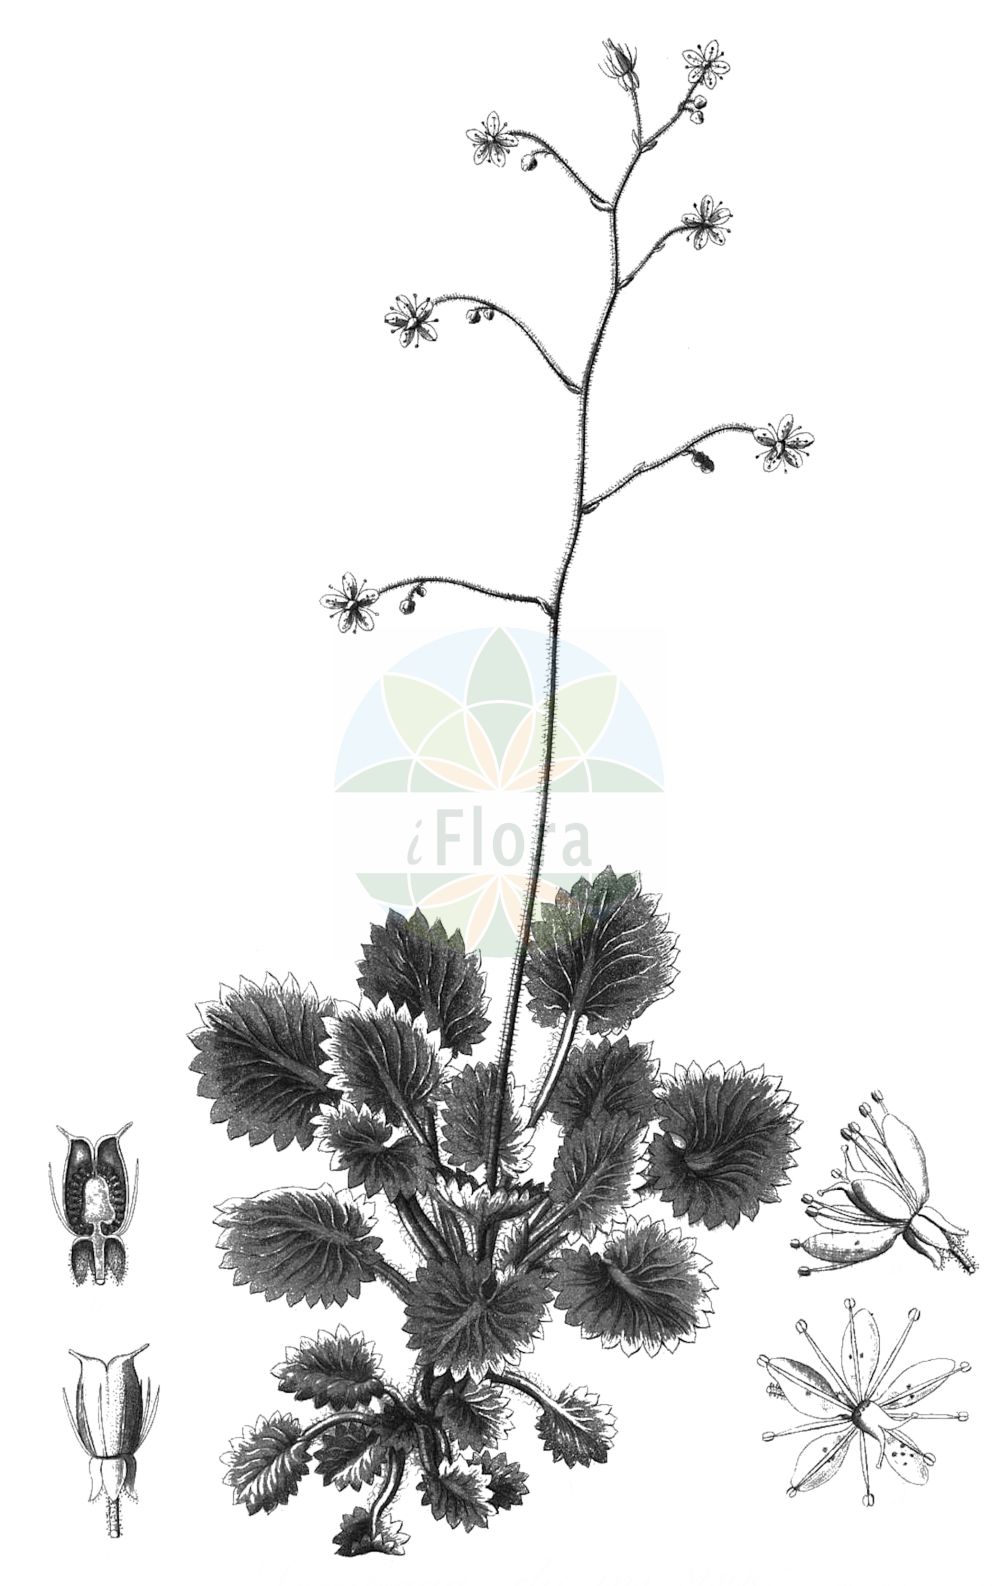 Historische Abbildung von Saxifraga hirsuta (Kidney Saxifrage). Das Bild zeigt Blatt, Bluete, Frucht und Same. ---- Historical Drawing of Saxifraga hirsuta (Kidney Saxifrage). The image is showing leaf, flower, fruit and seed.(Saxifraga hirsuta,Kidney Saxifrage,Saxifraga hirsuta,Saxifraga,Steinbrech,Saxifrage,Saxifragaceae,Steinbrechgewächse,Saxifrage family,Blatt,Bluete,Frucht,Same,leaf,flower,fruit,seed,Reichenbach (1823-1832))